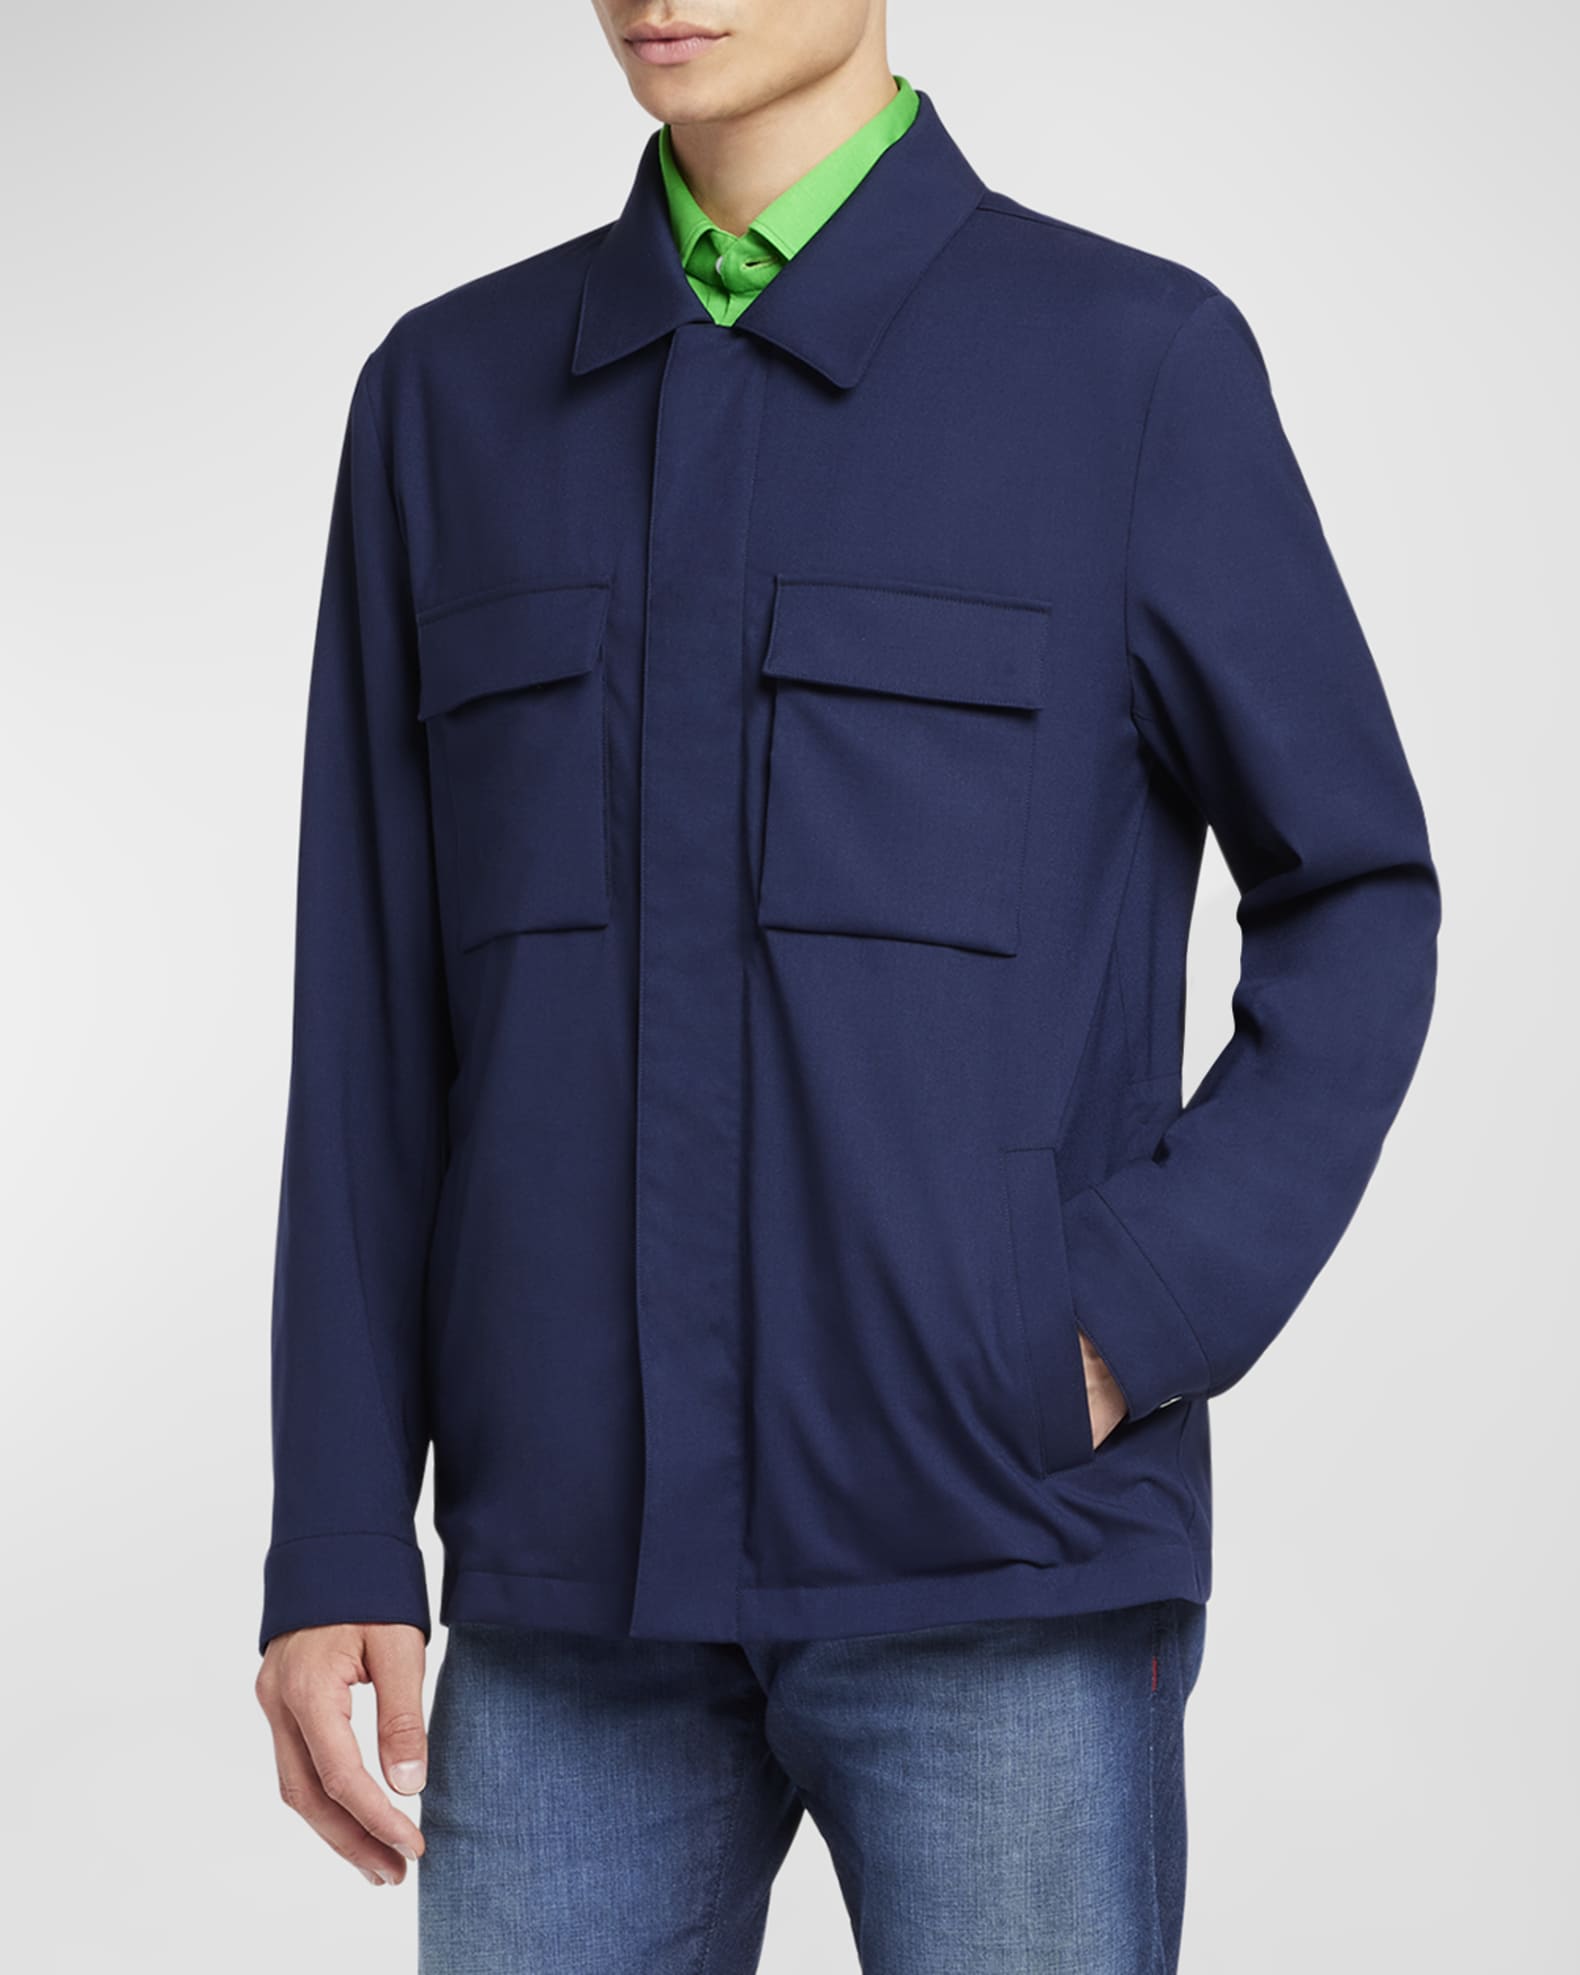 KITON - Zipped Jacket